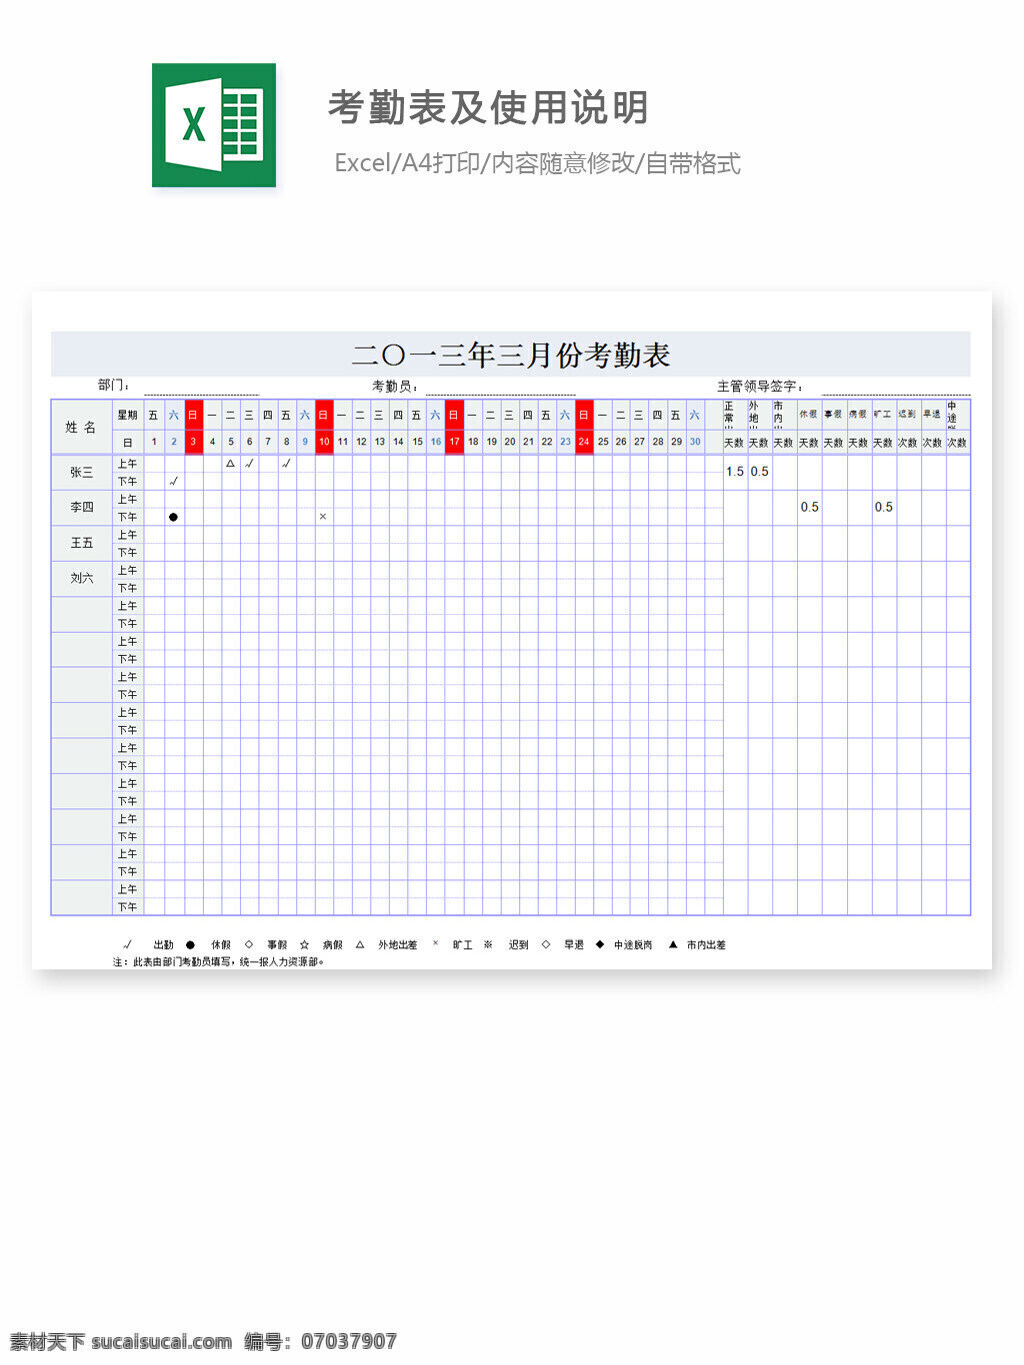 考勤 表 使用说明 excel 表格 表格模板 表格设计 图表 工作